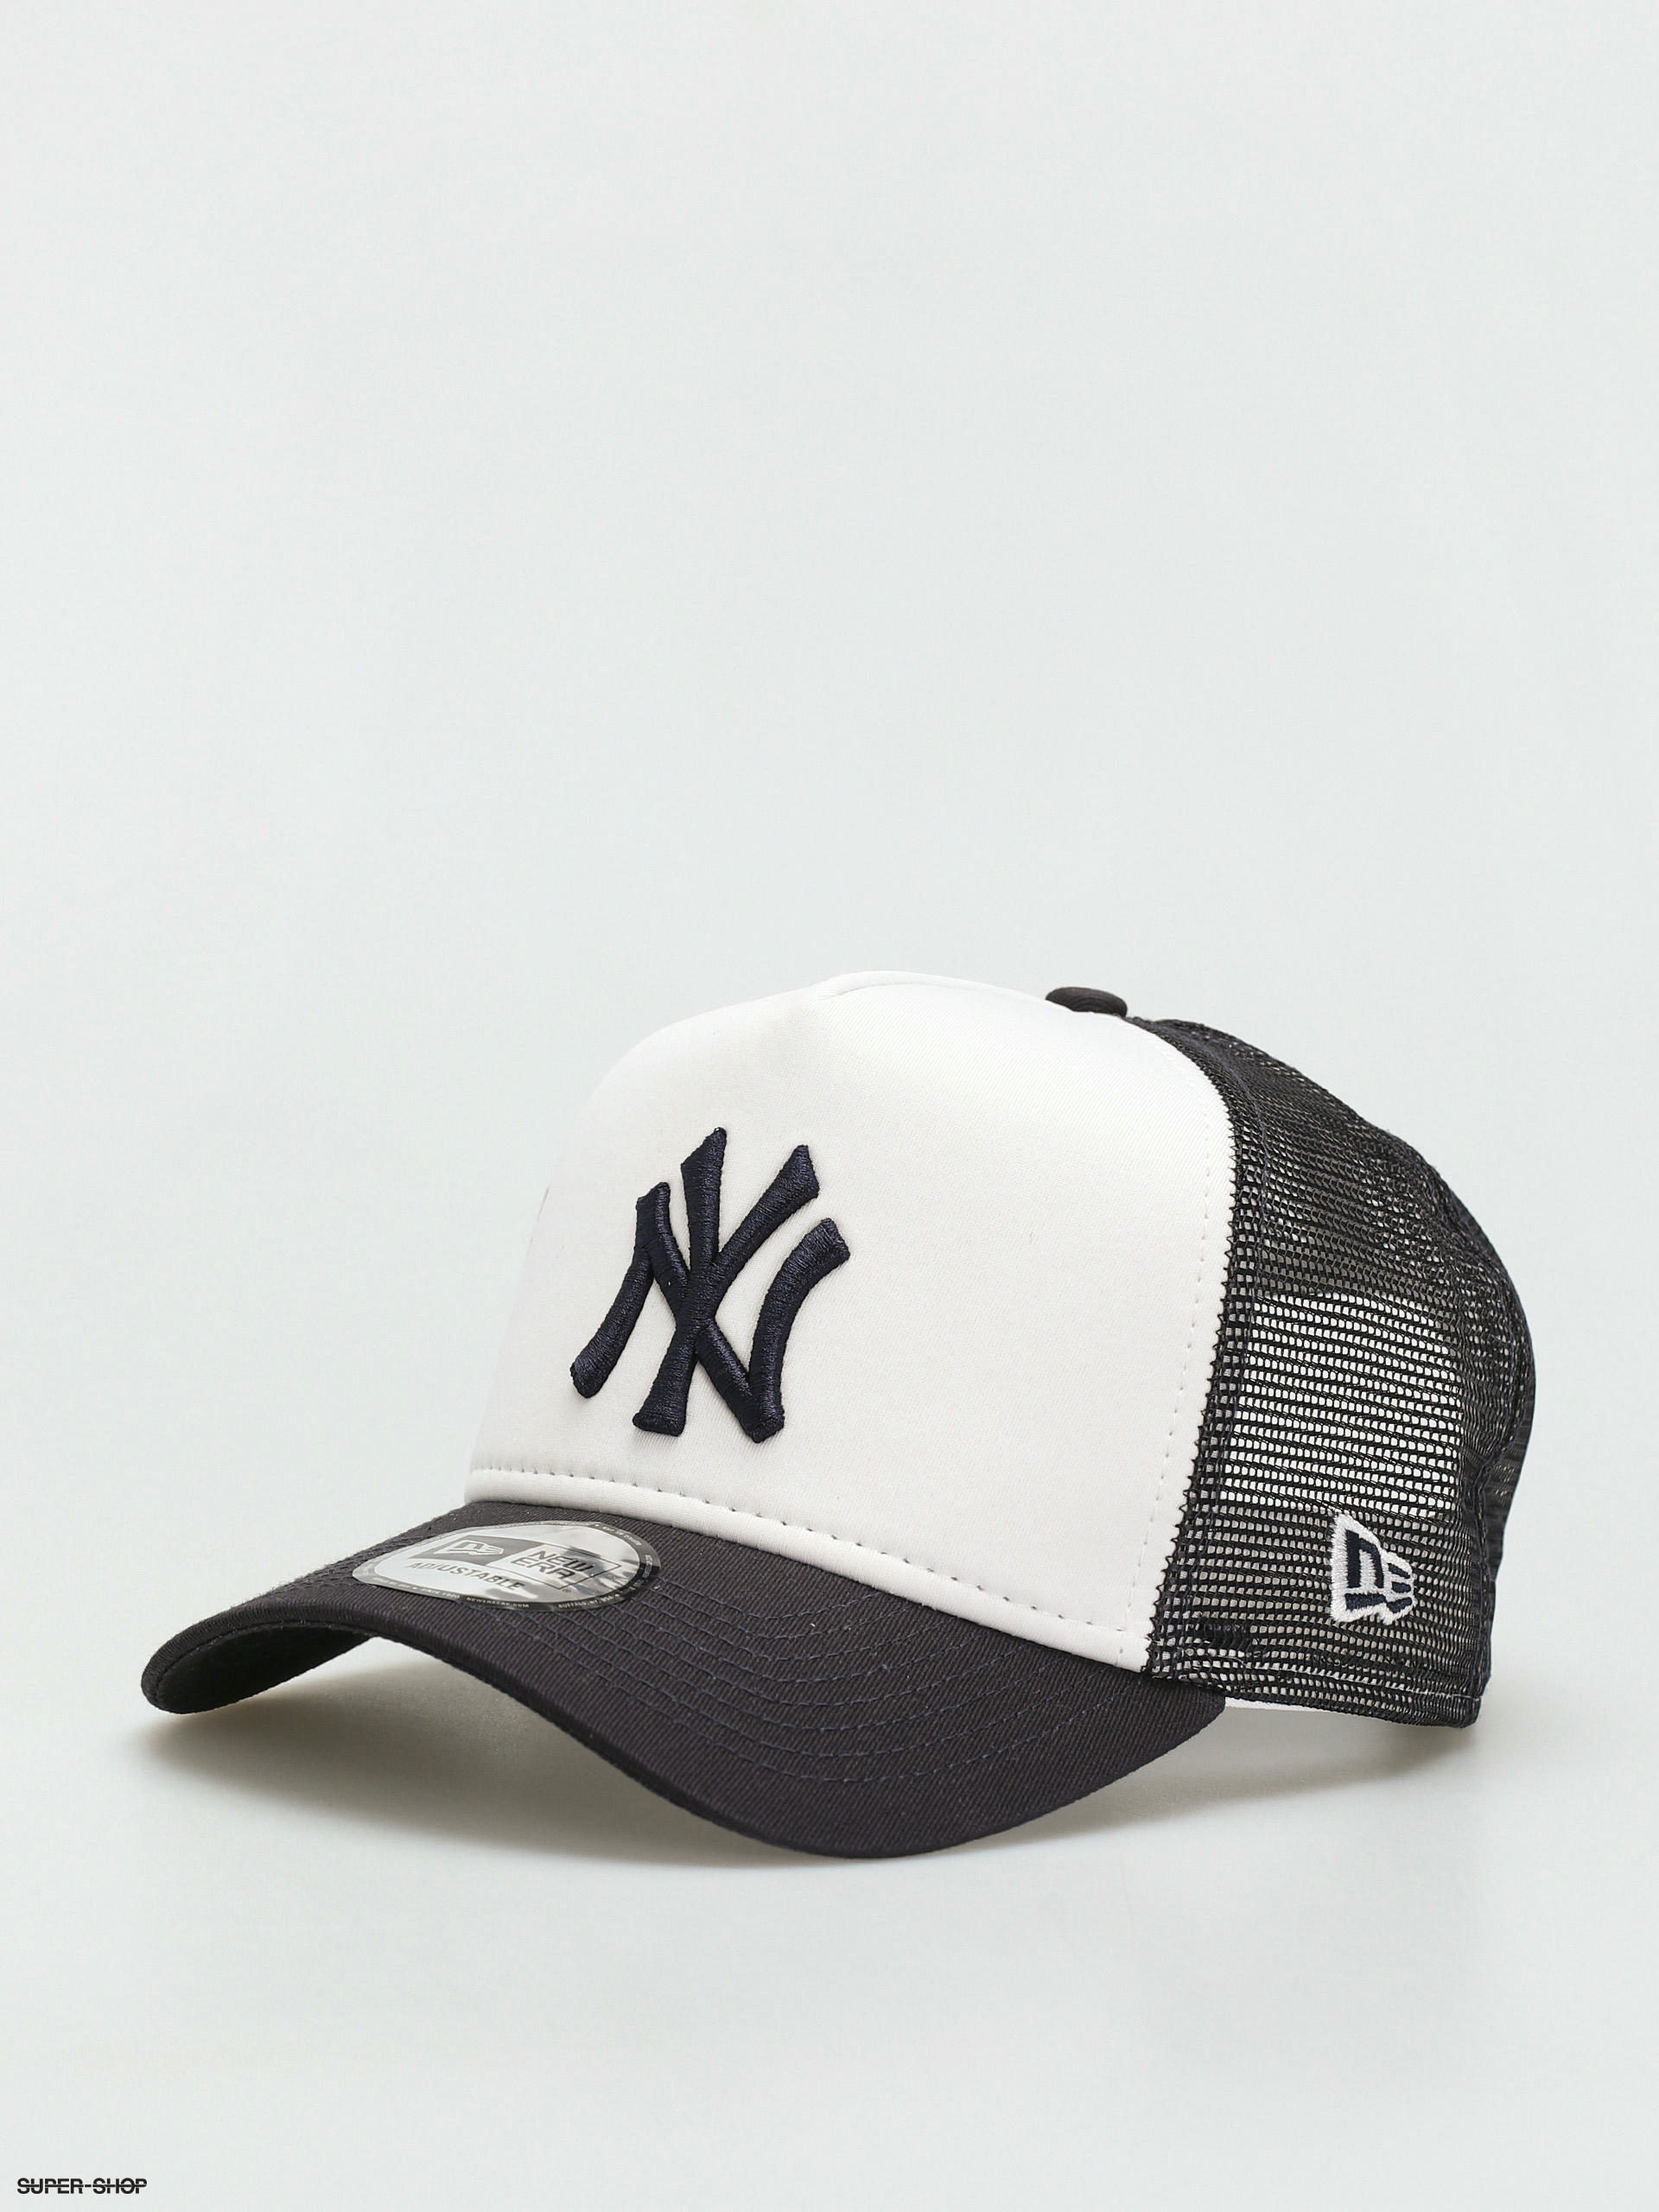 New Era - New York Yankees - All White - 8 1/4